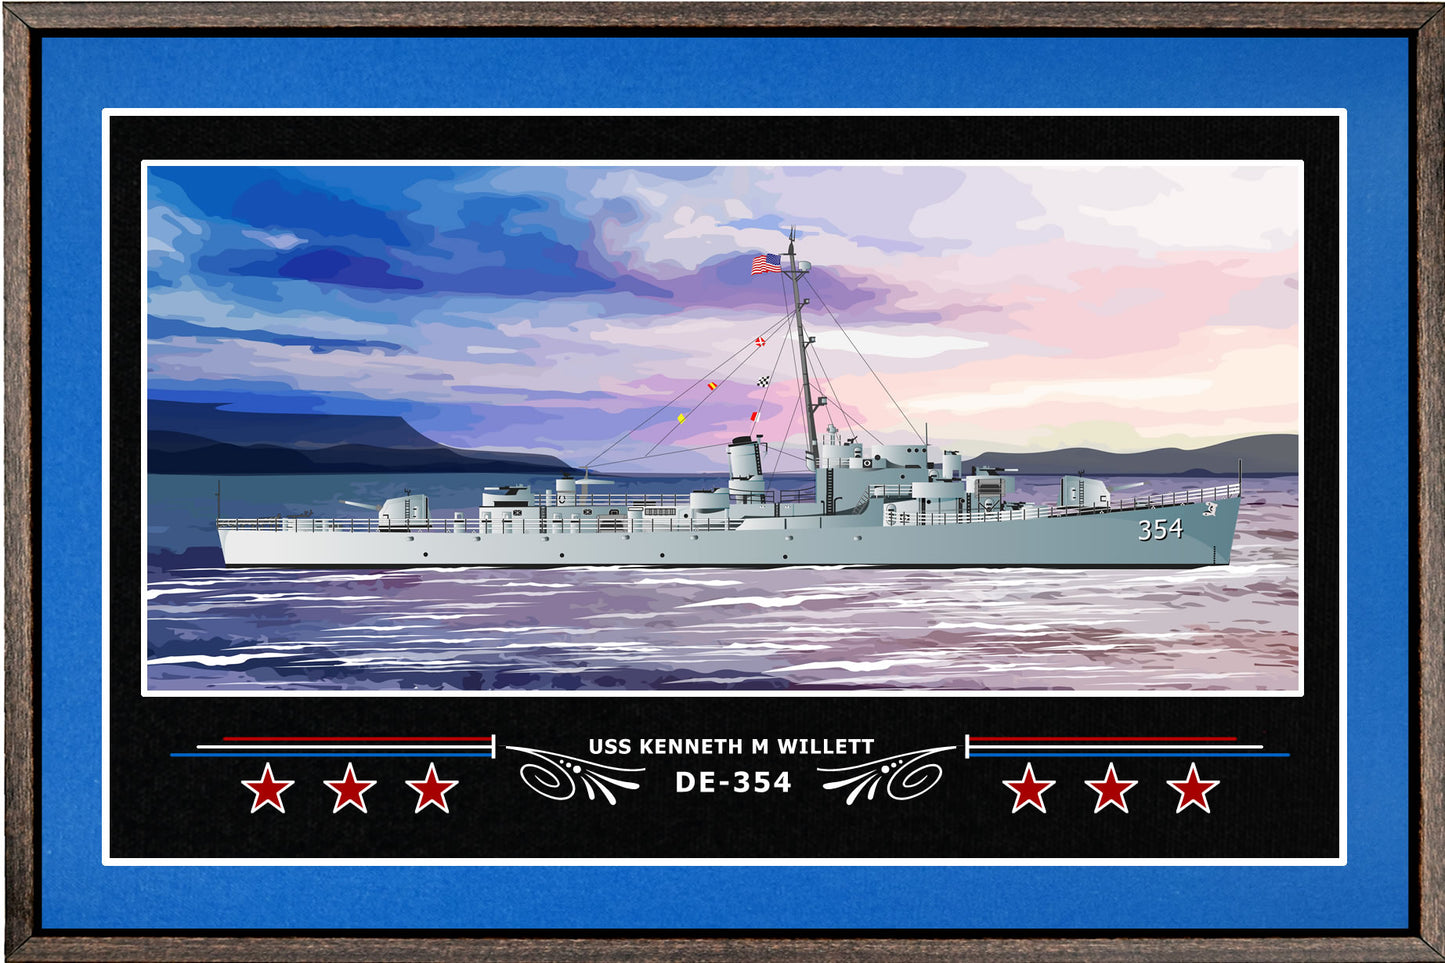 USS KENNETH M WILLETT DE 354 BOX FRAMED CANVAS ART BLUE